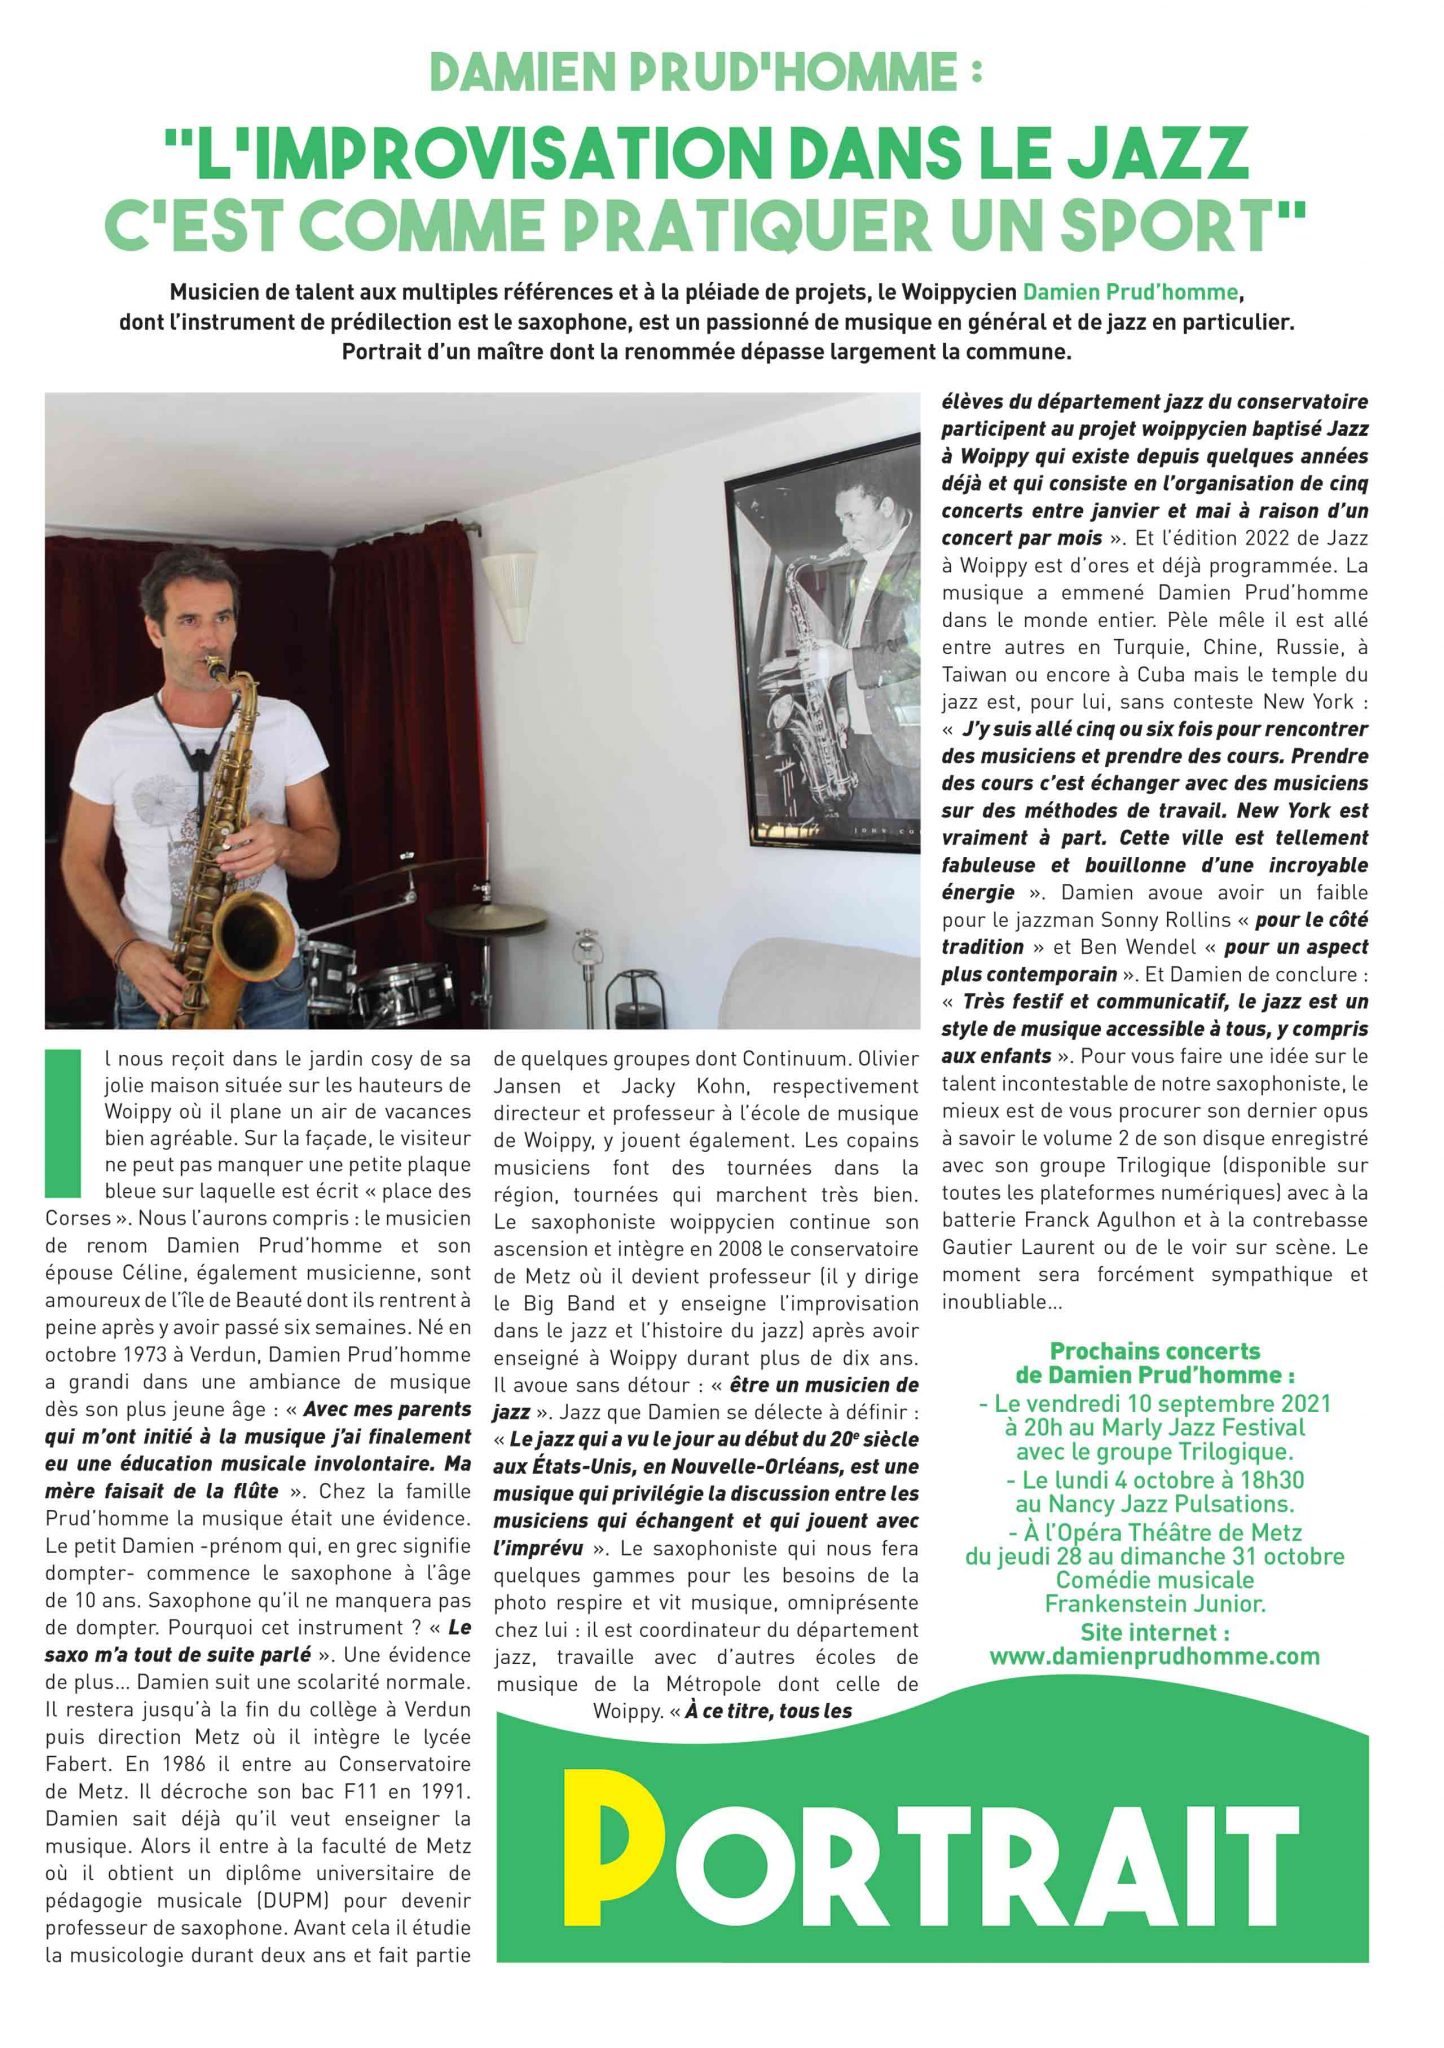 interview departement jazz CRR Metz metropole